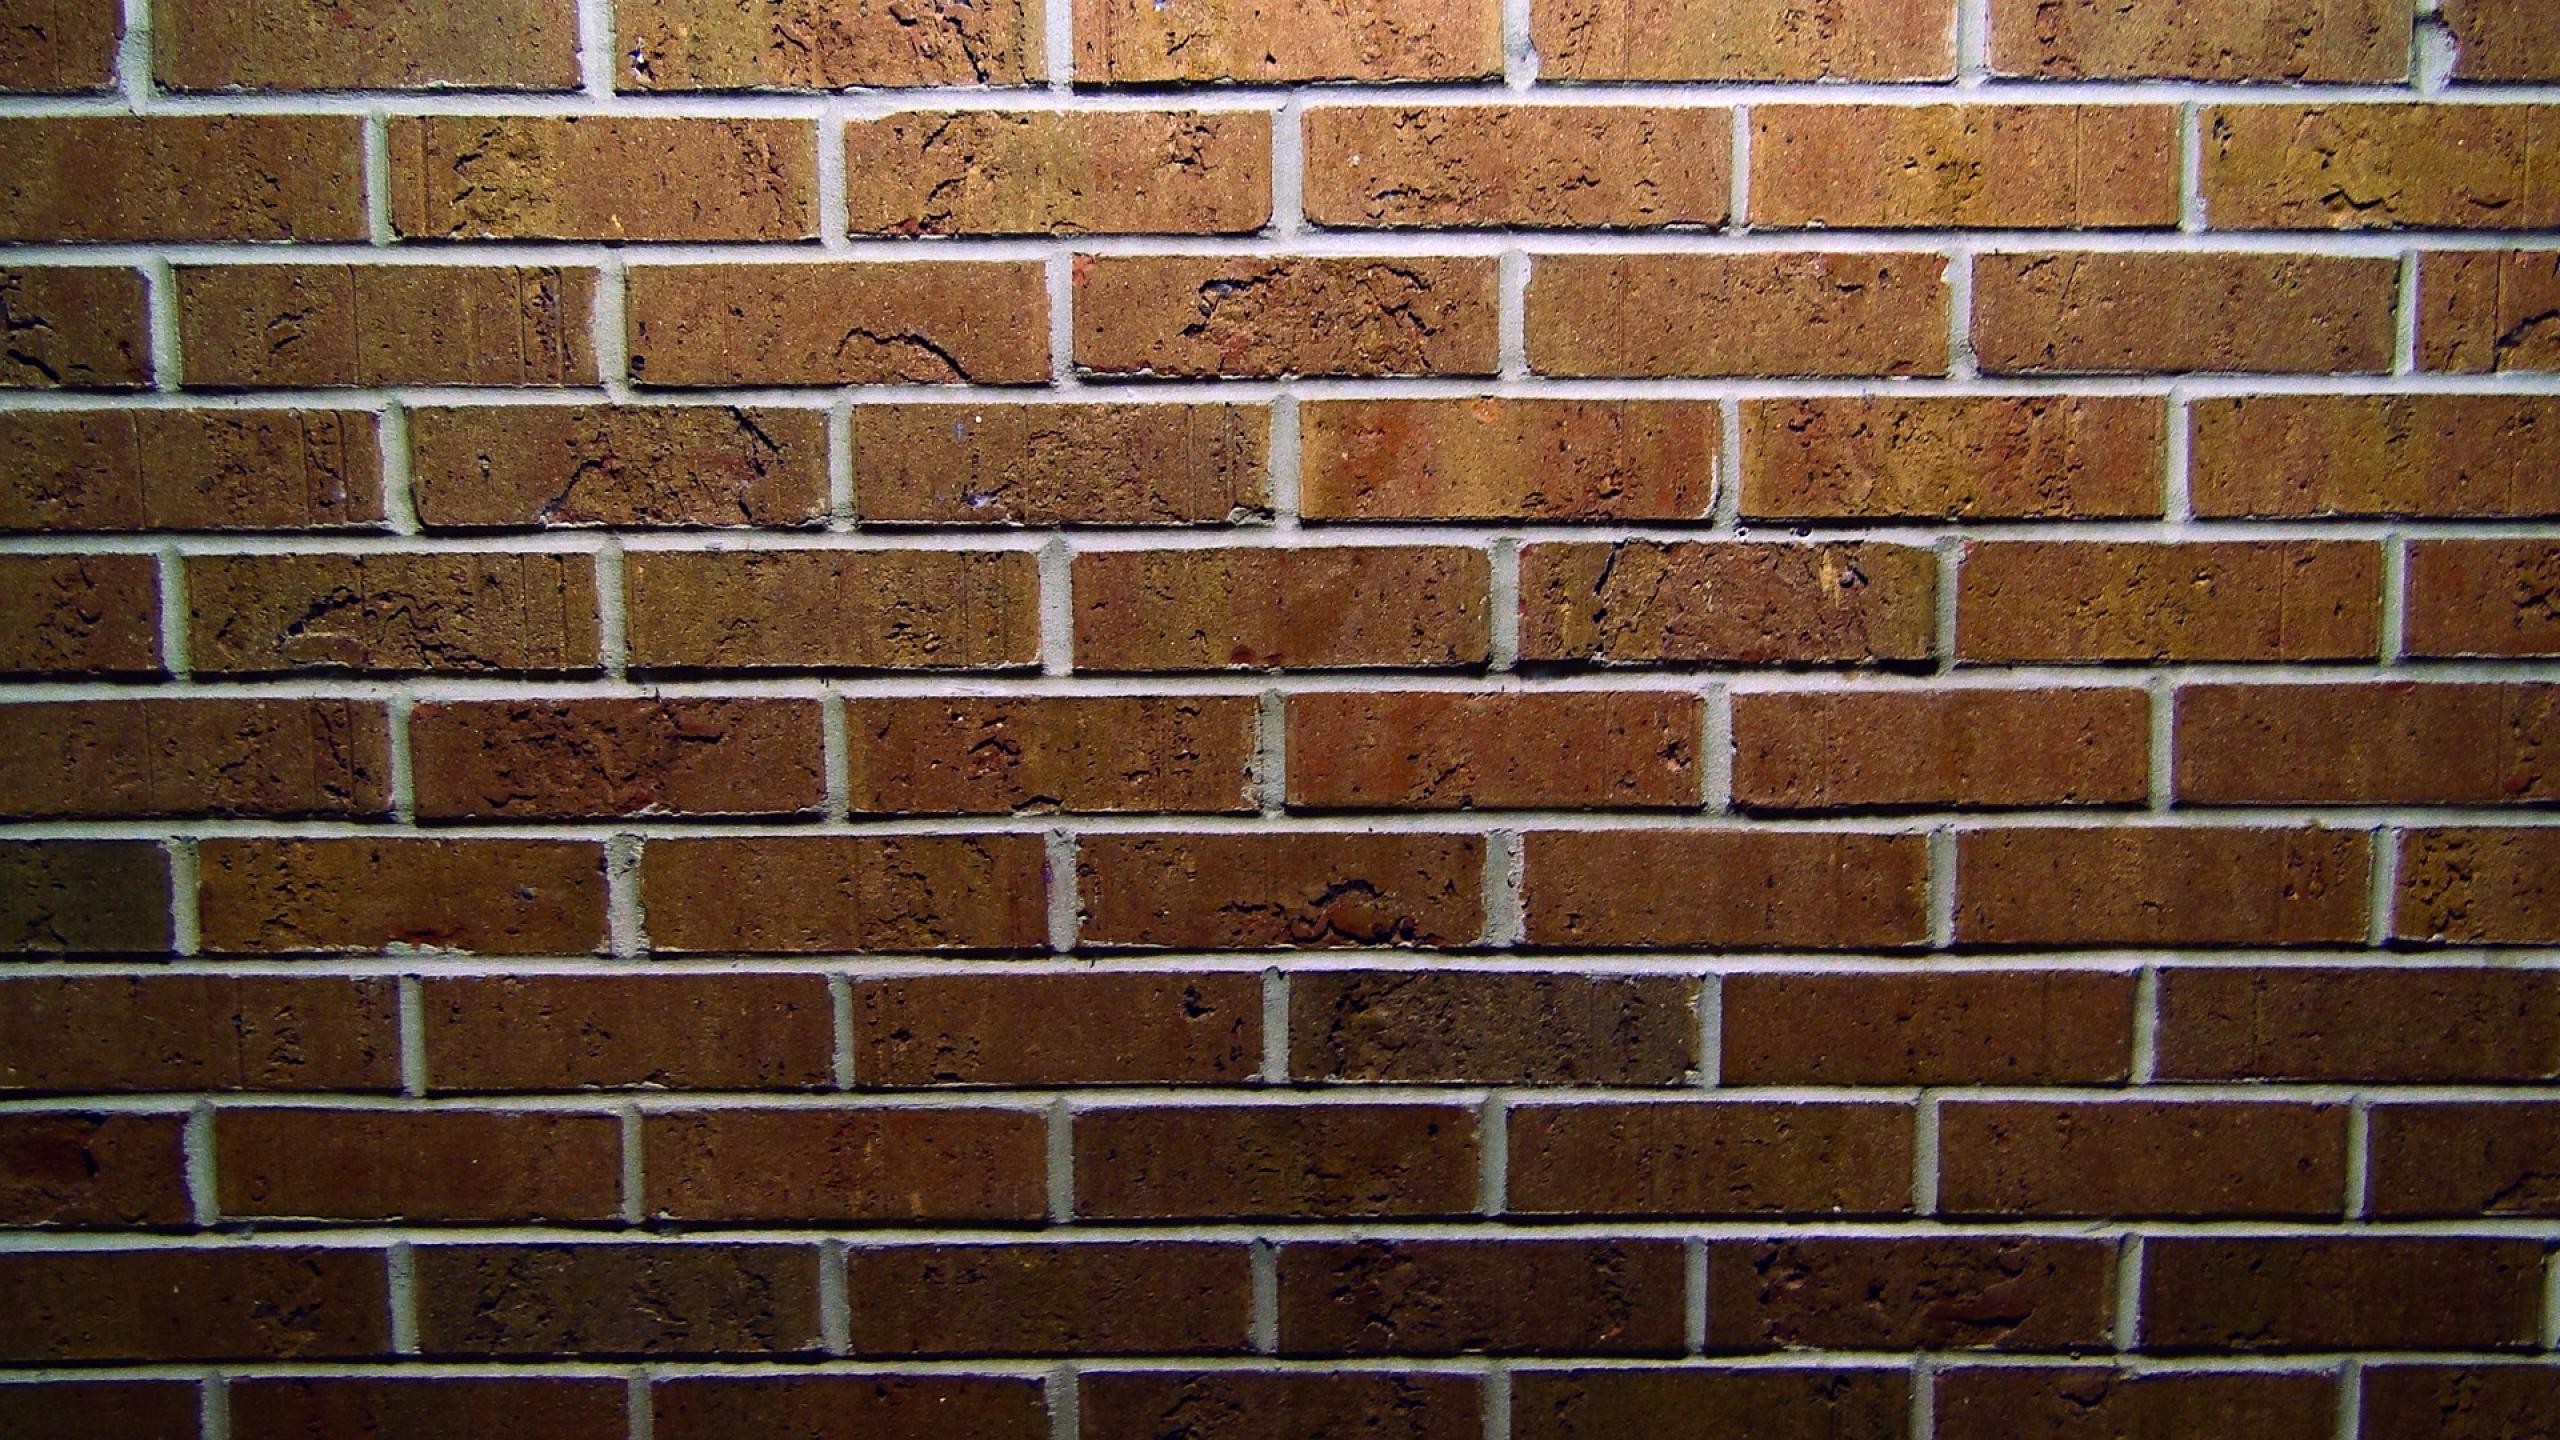 General 2560x1440 wall bricks texture